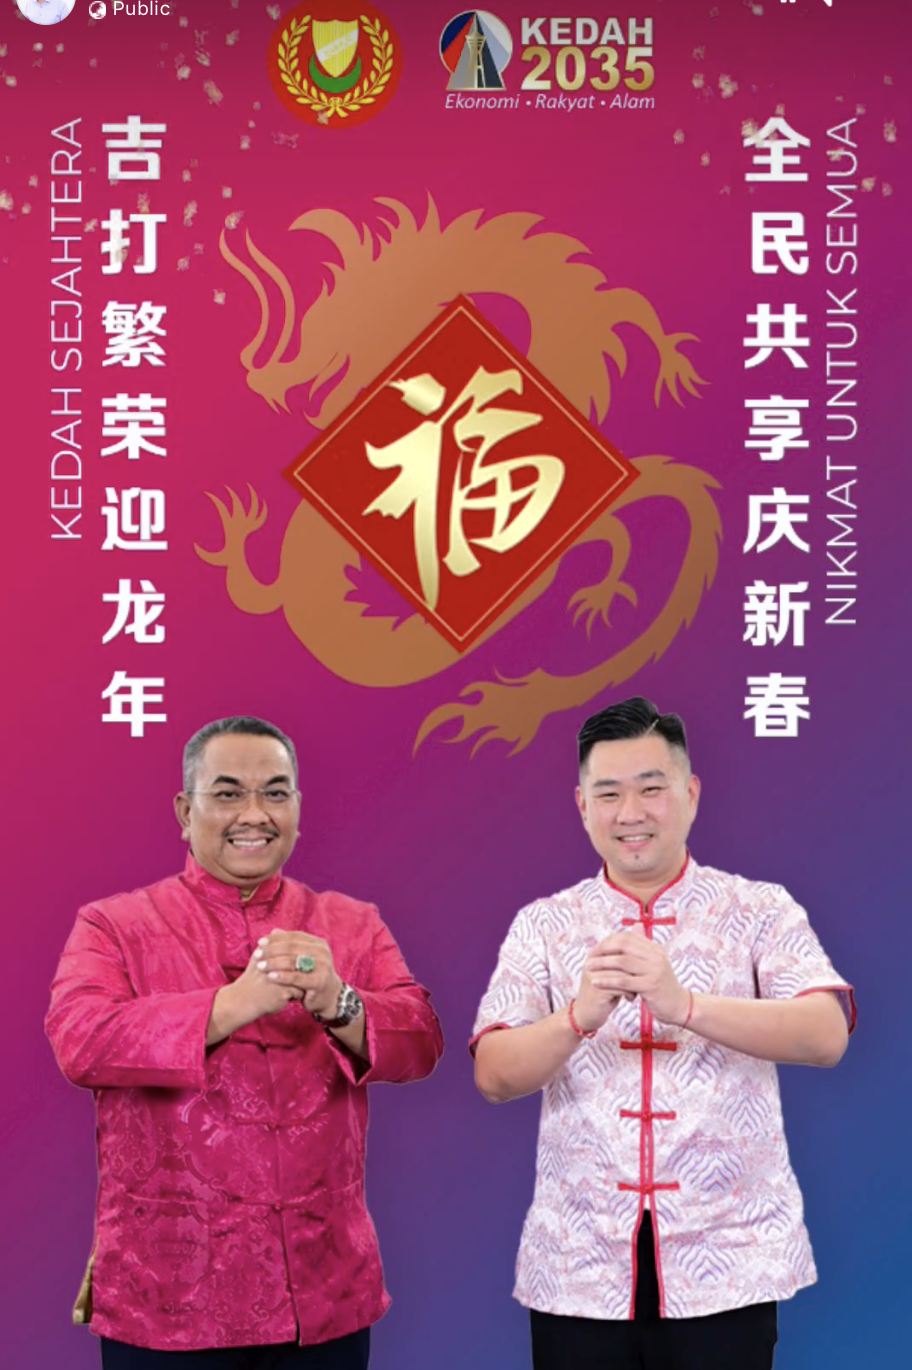 Sanusi & wong chia zhen poster about cny